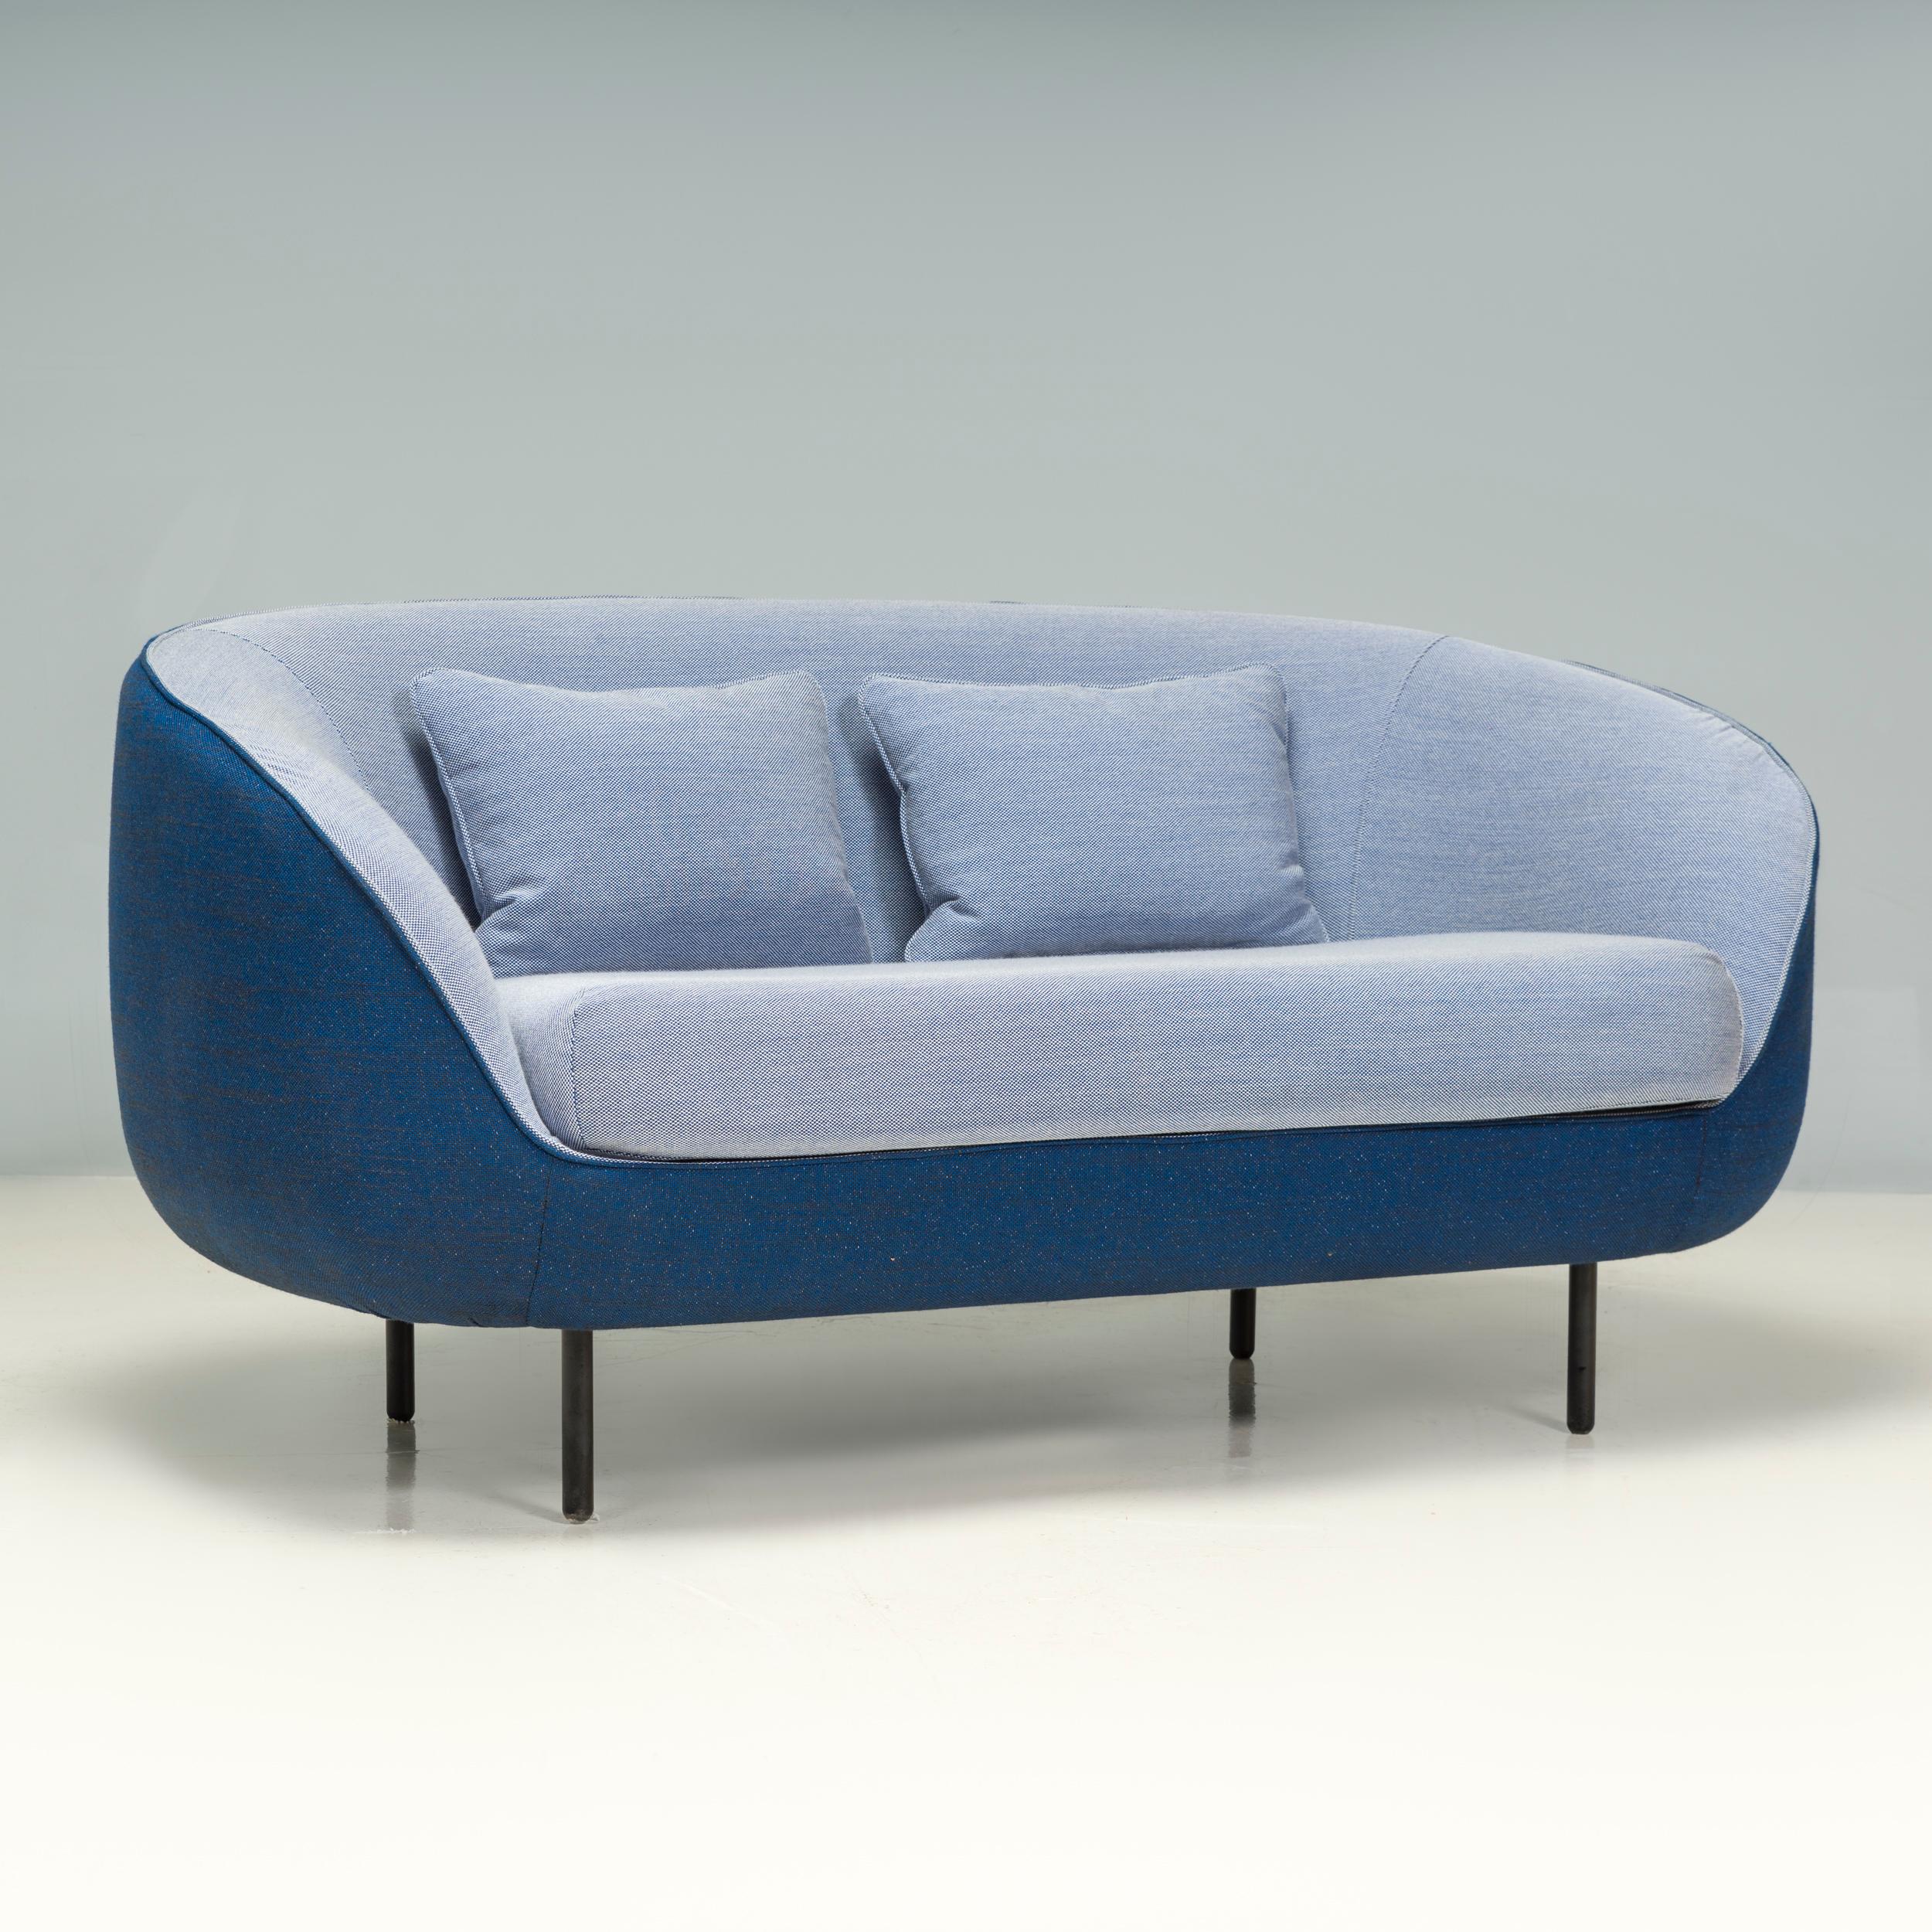 Ursprünglich von GamFratesi für den dänischen Möbelhersteller Fredericia im Jahr 2012 entworfen, wurde dieses Haiku-Sofa im Jahr 2018 hergestellt.

Das Haiku-Sofa ist eine perfekte Mischung aus italienischem und dänischem Design und ist gleichzeitig